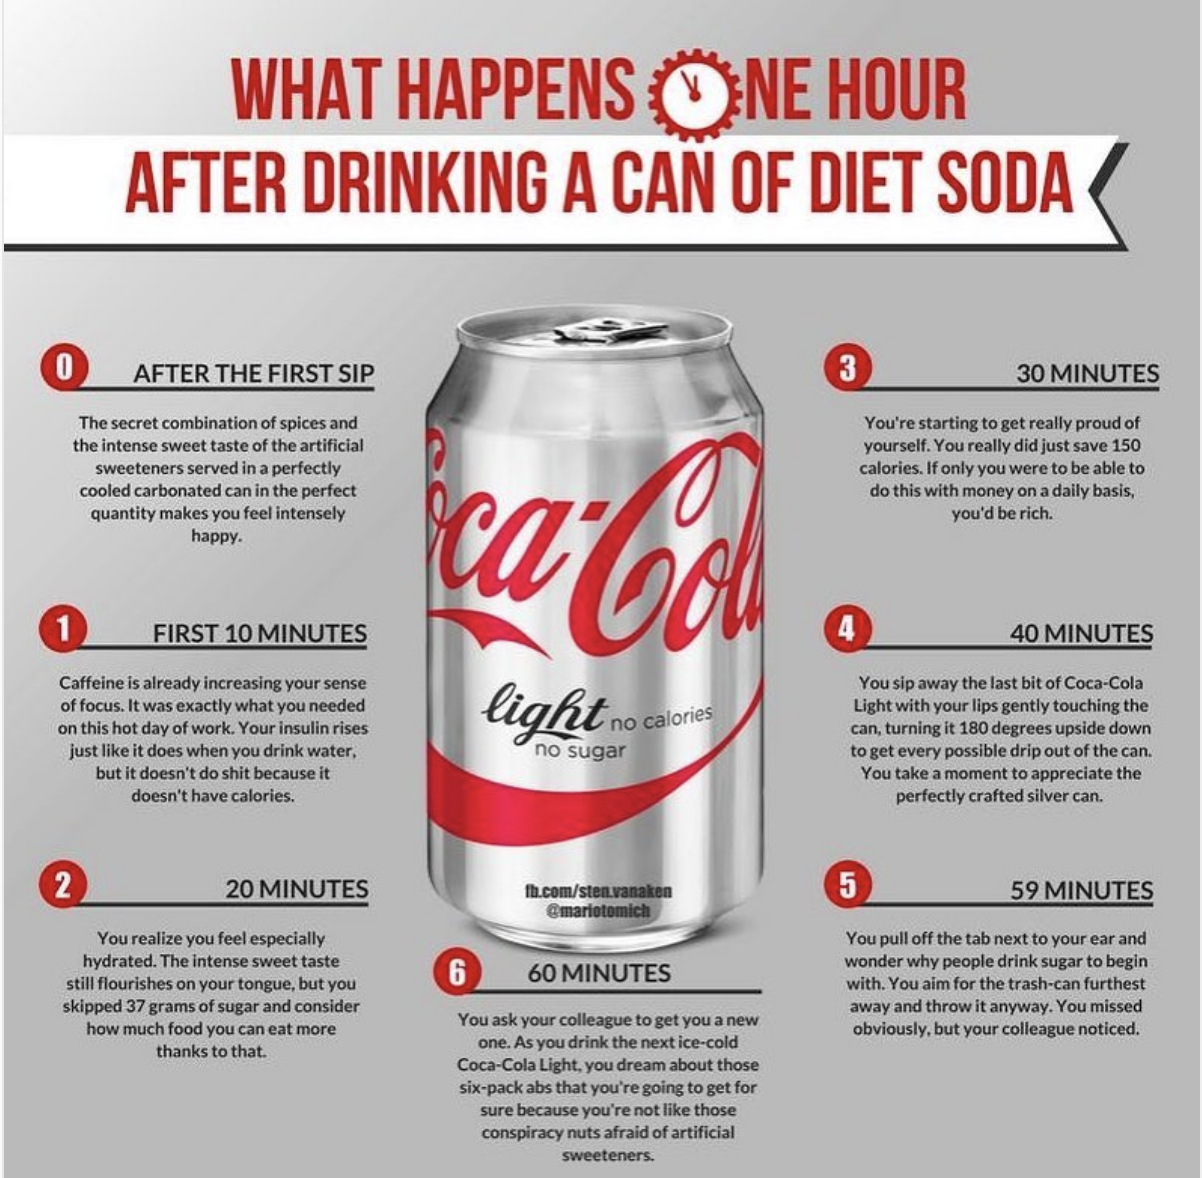 Instagram Post about Diet Coke